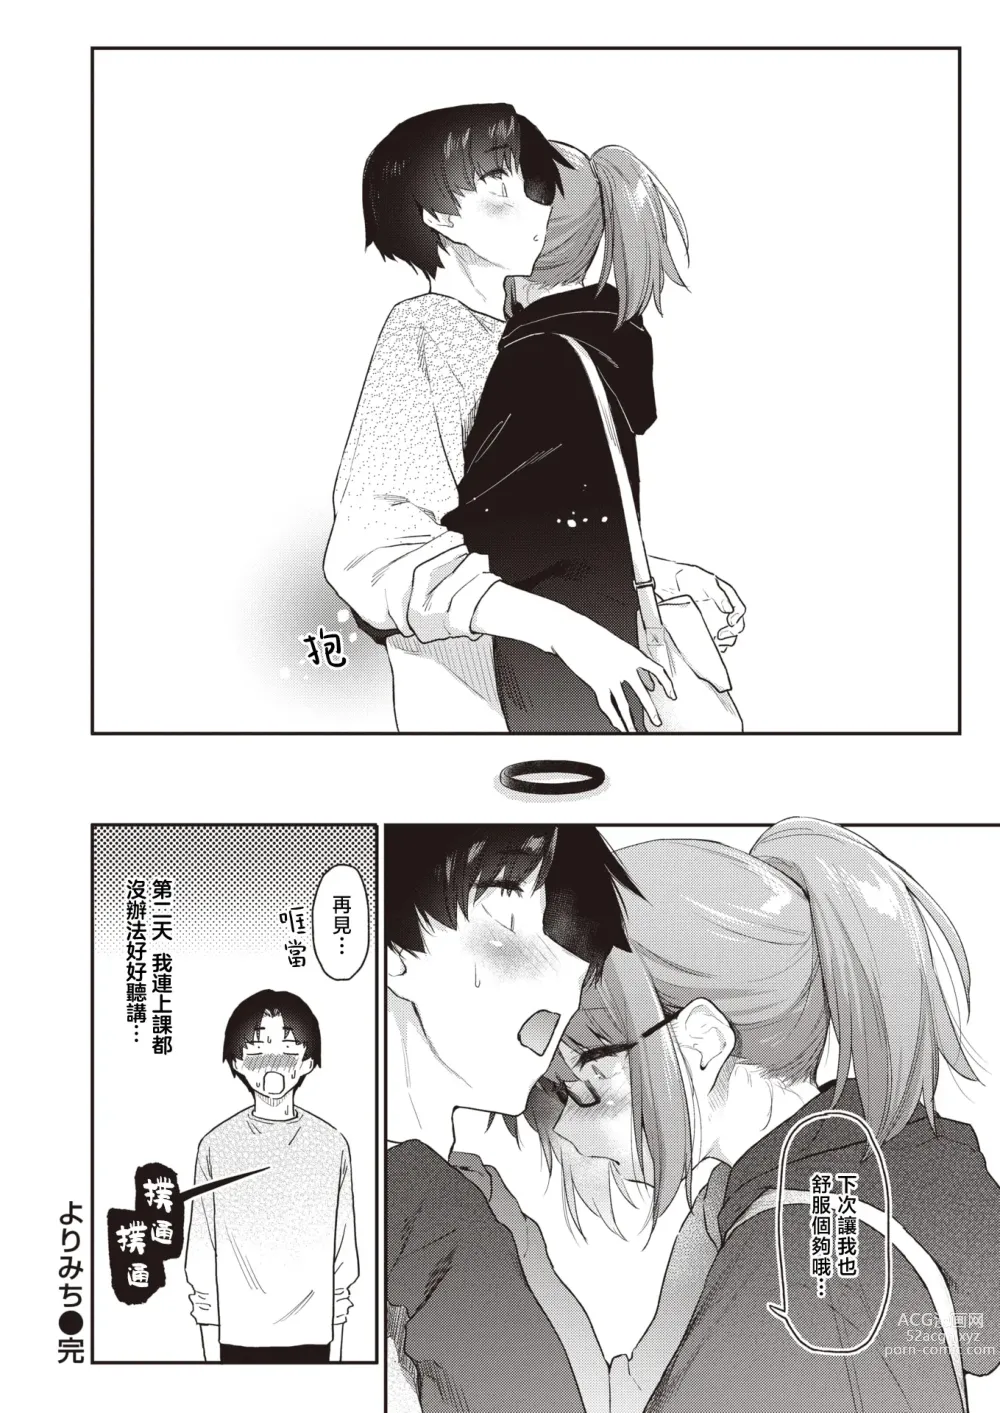 Page 29 of manga 绕道